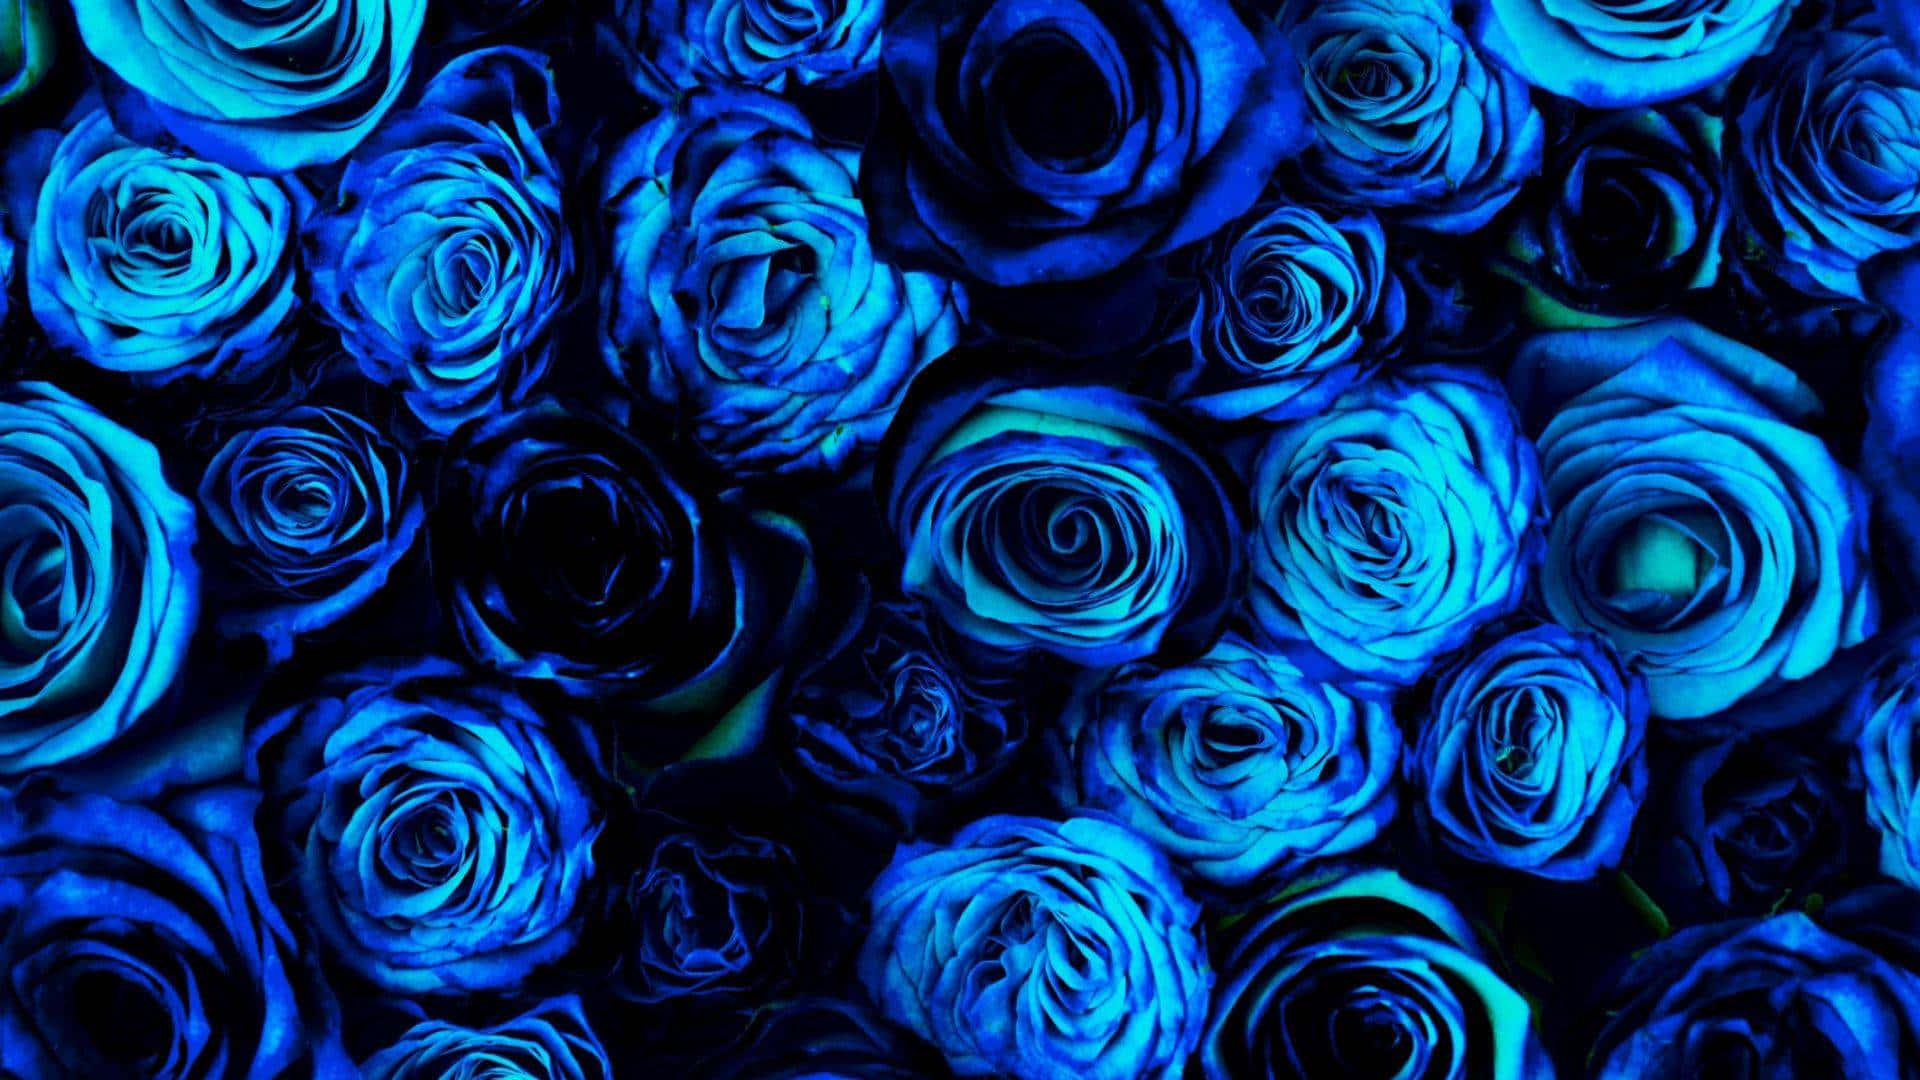 Tauchensie Ein In Die Faszinierenden Blautöne Mit Diesem Mitreißenden Hübschen Blauen Hintergrundbild.